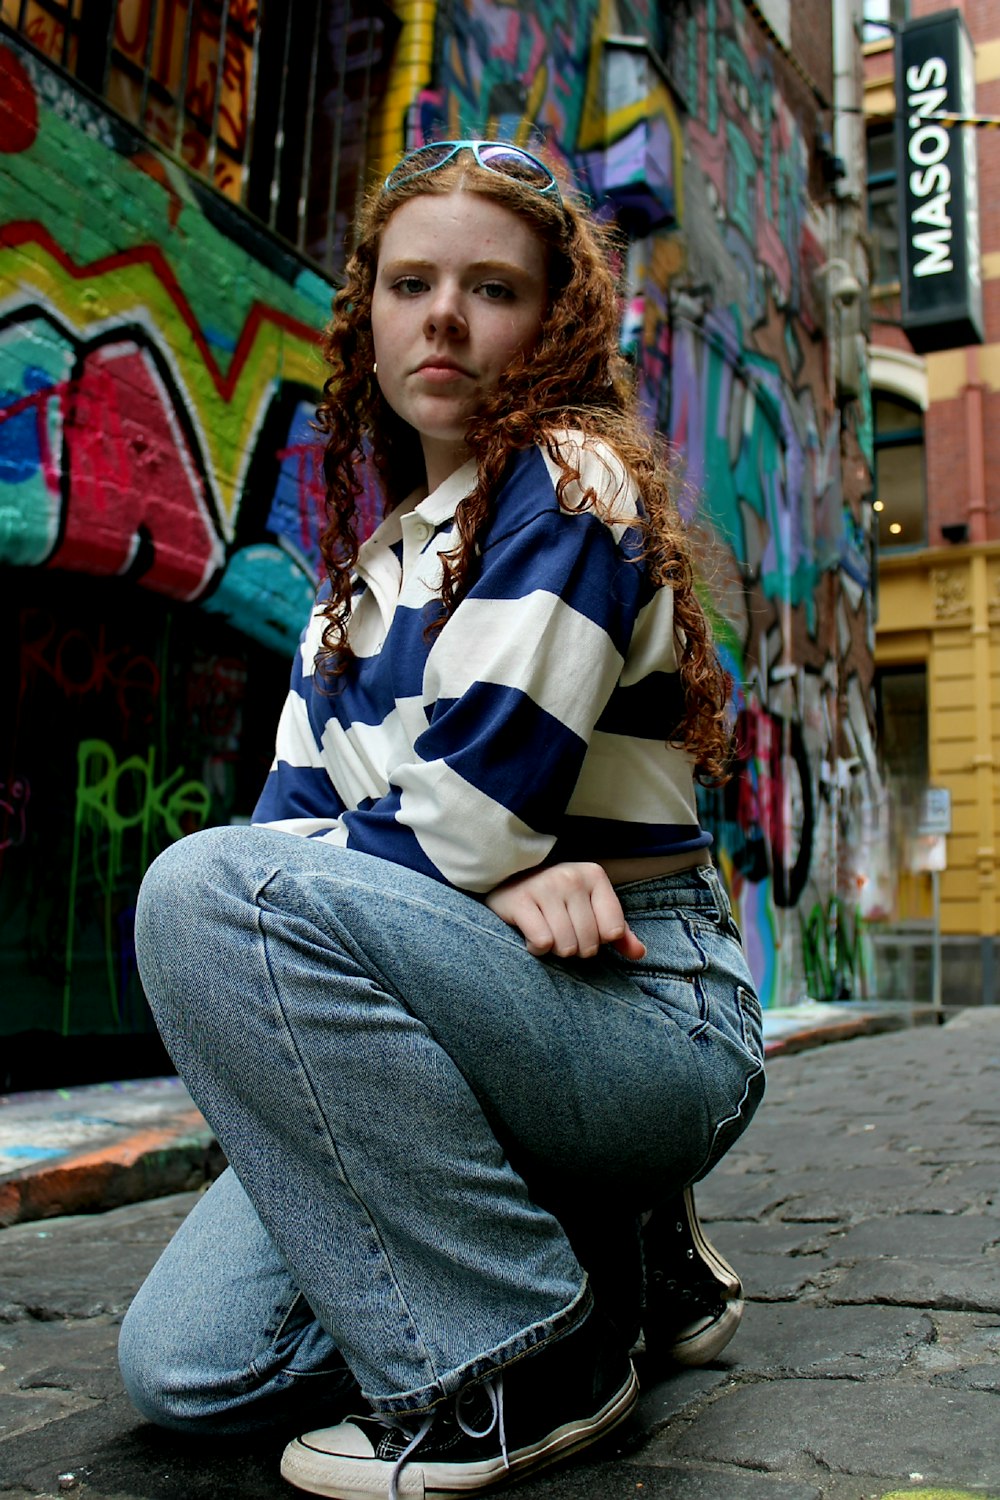 Eine Frau, die auf dem Boden vor einer mit Graffiti bedeckten Wand sitzt